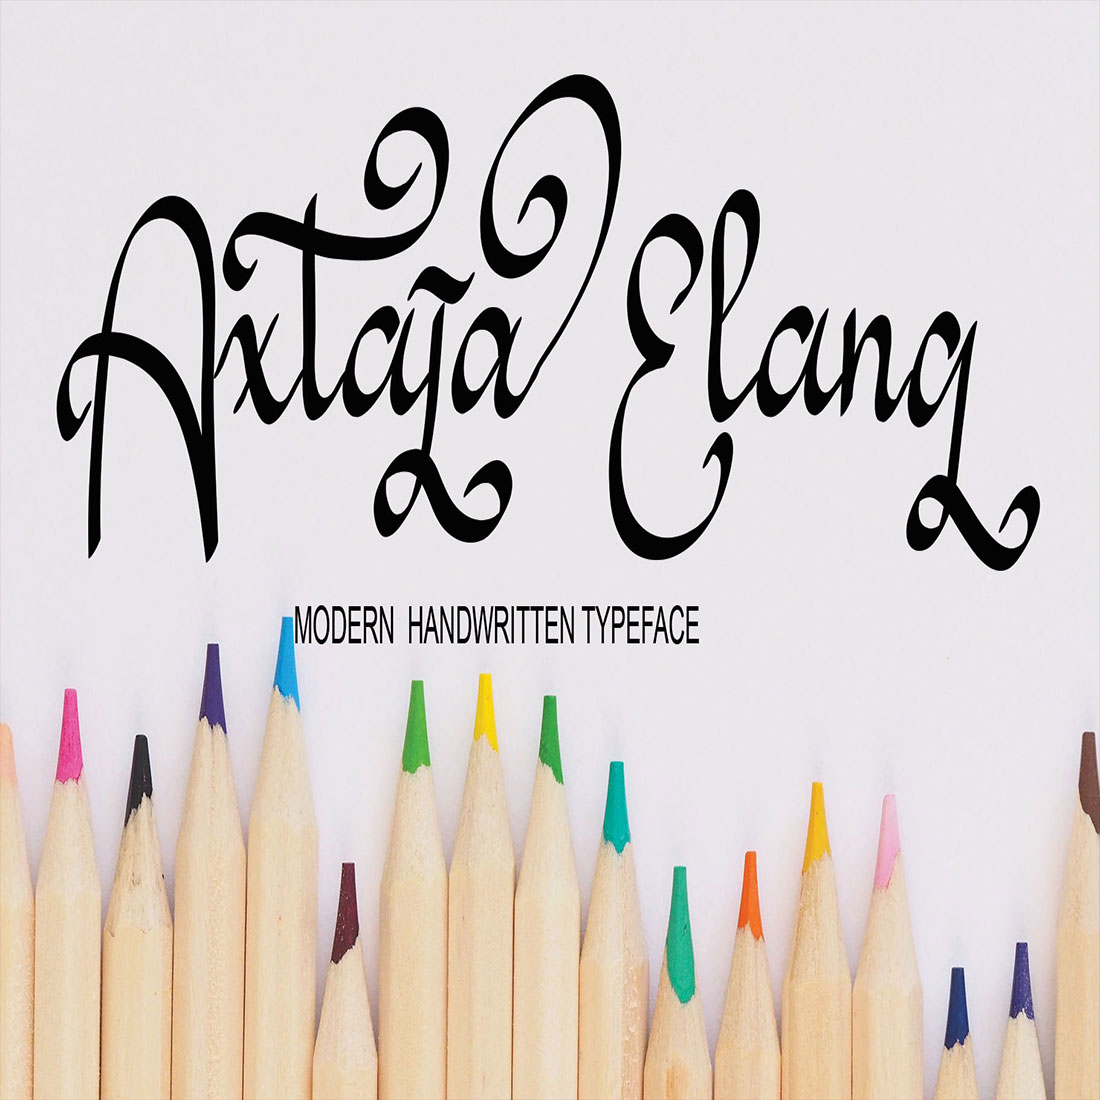 Axtaja Elang Font main cover.